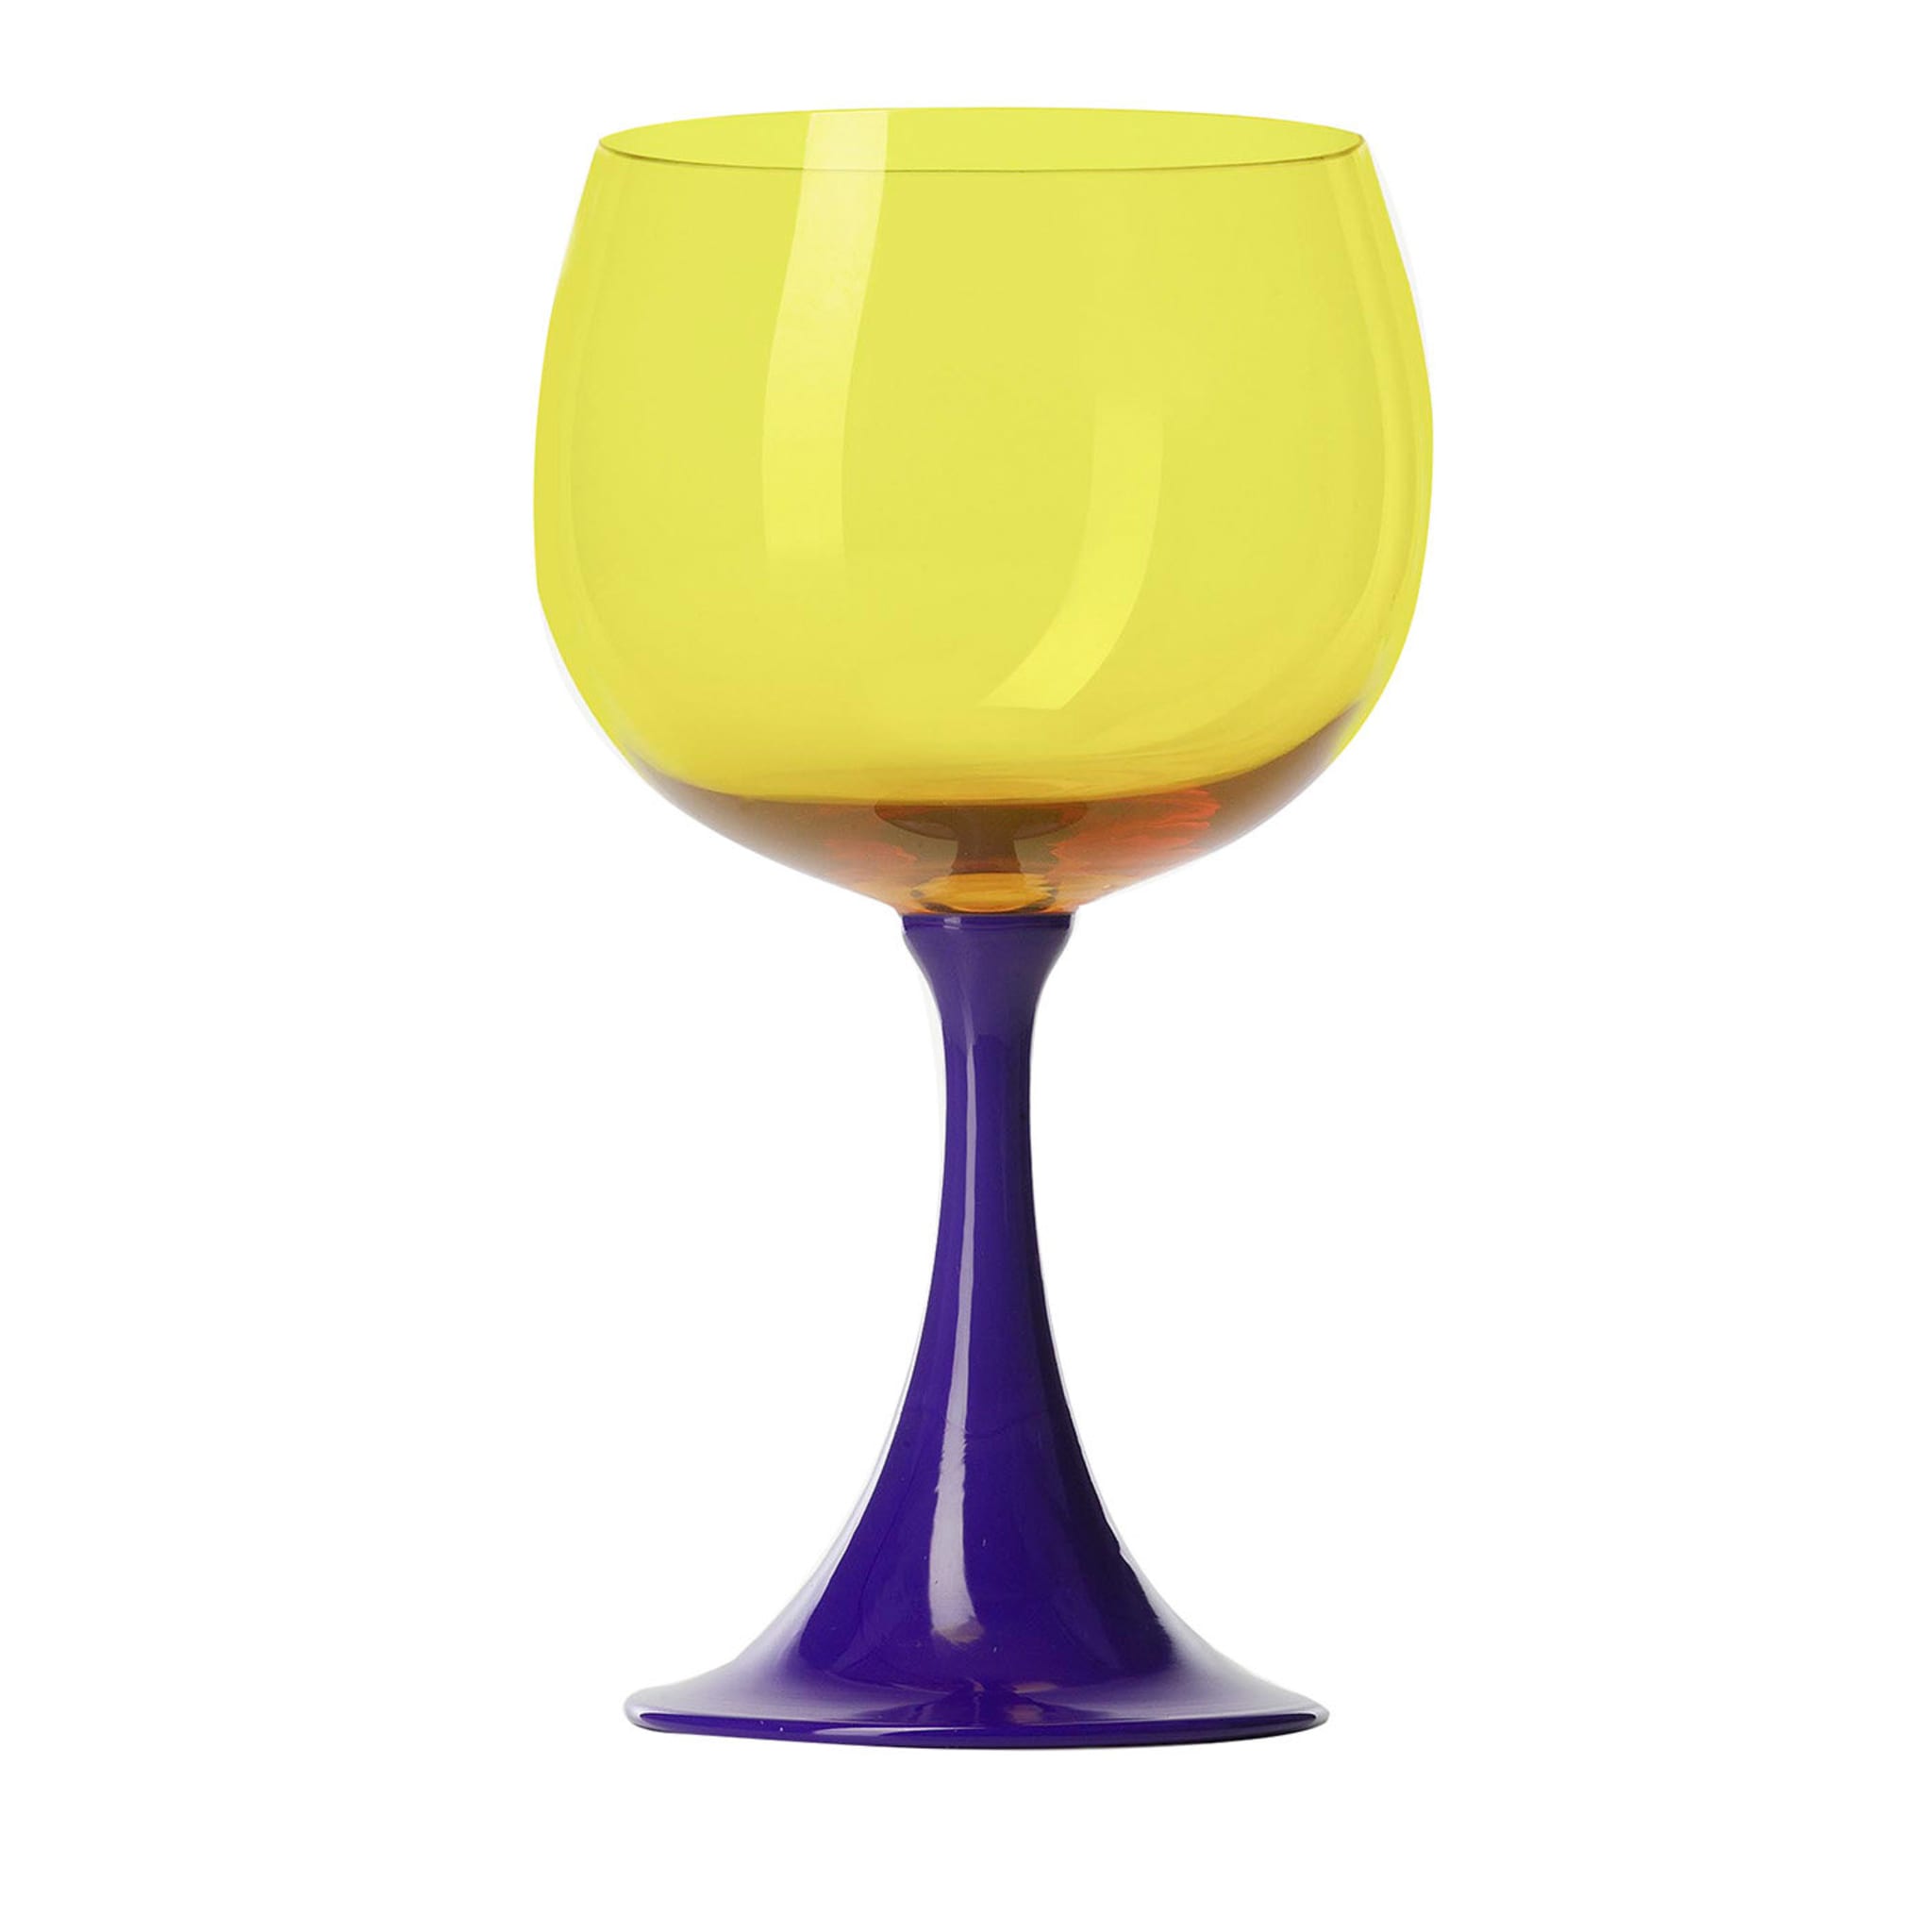 Burlesque Yellow Burgundy Glass by NasonMoretti and Stefano Marcato - Main view